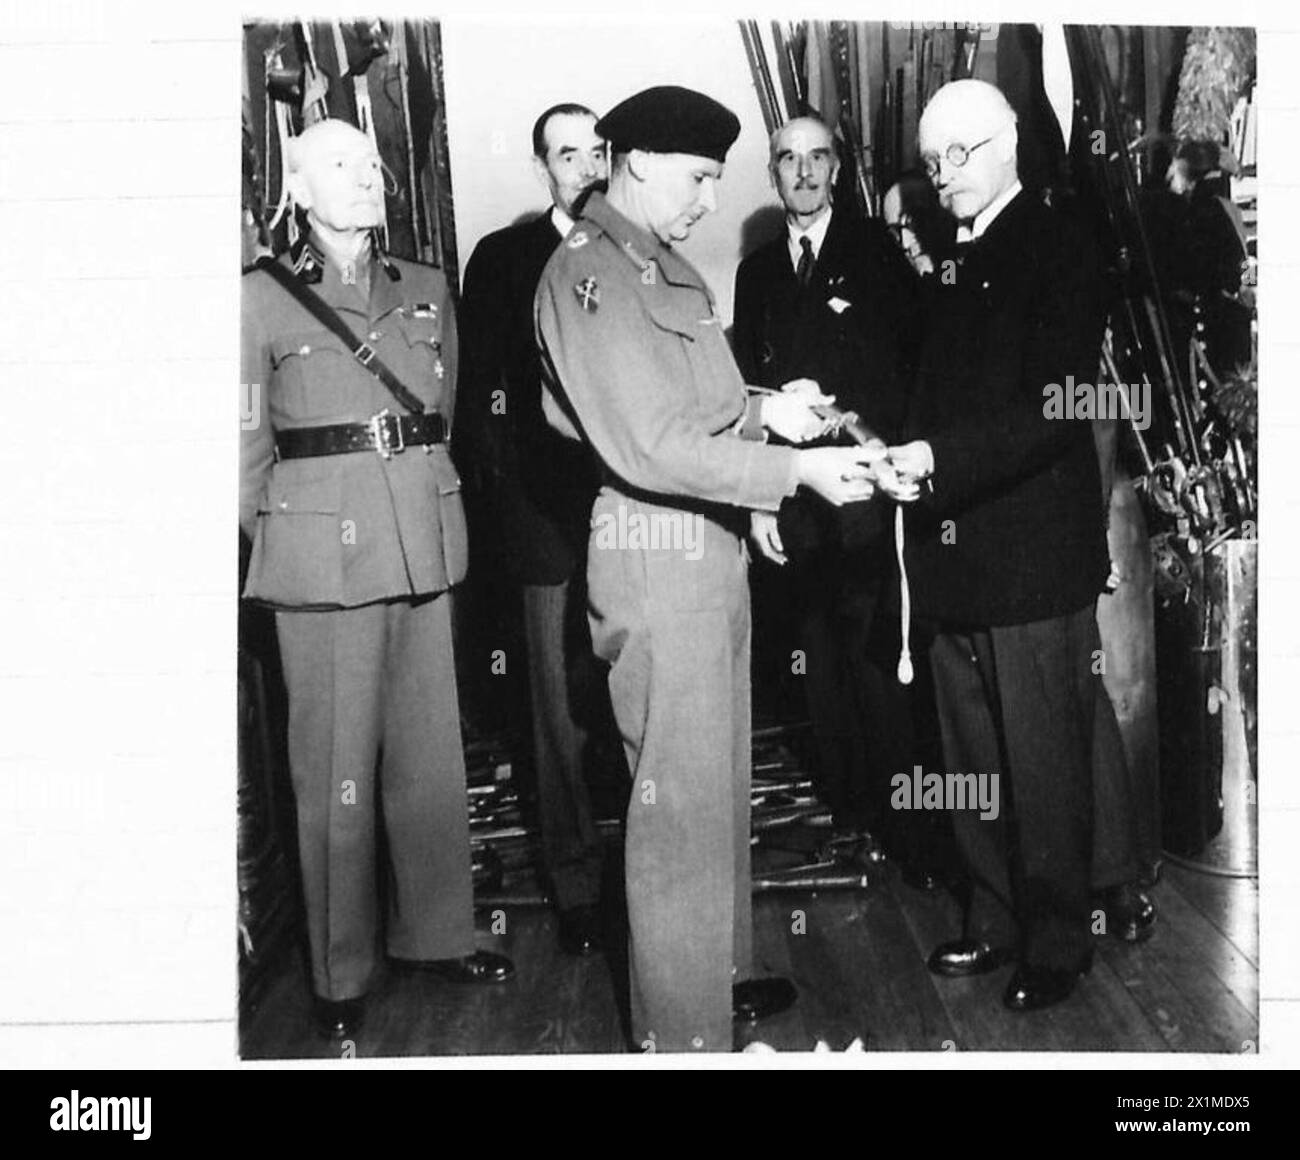 EXCLUSIF - en reconnaissance de ses services dans la libération de la Belgique, le maréchal Sir Bernard Montgomery, commandant en chef du Groupe d'armées 21, a reçu une épée belge historique. C'était l'épée du premier État major de l'armée belge. Sur la gaine étaient inscrites les mots : - 'au LIBERATEUR DE BRUXELLES LE 3 SEPTEMBRE 1944, ses amis RECONNAISSANTS. OFFERT PAR COMTE DE RIBANCOURT, LES MEMBRES DE L'ASSOCIATION DE MALTE, ET LES MEMBRES DU CERCLE DU PARC BRUXELLES.' La photo montre le comte de Rinancourt présentant l'épée au maréchal de l'armée britannique, 21e groupe d'armées Banque D'Images